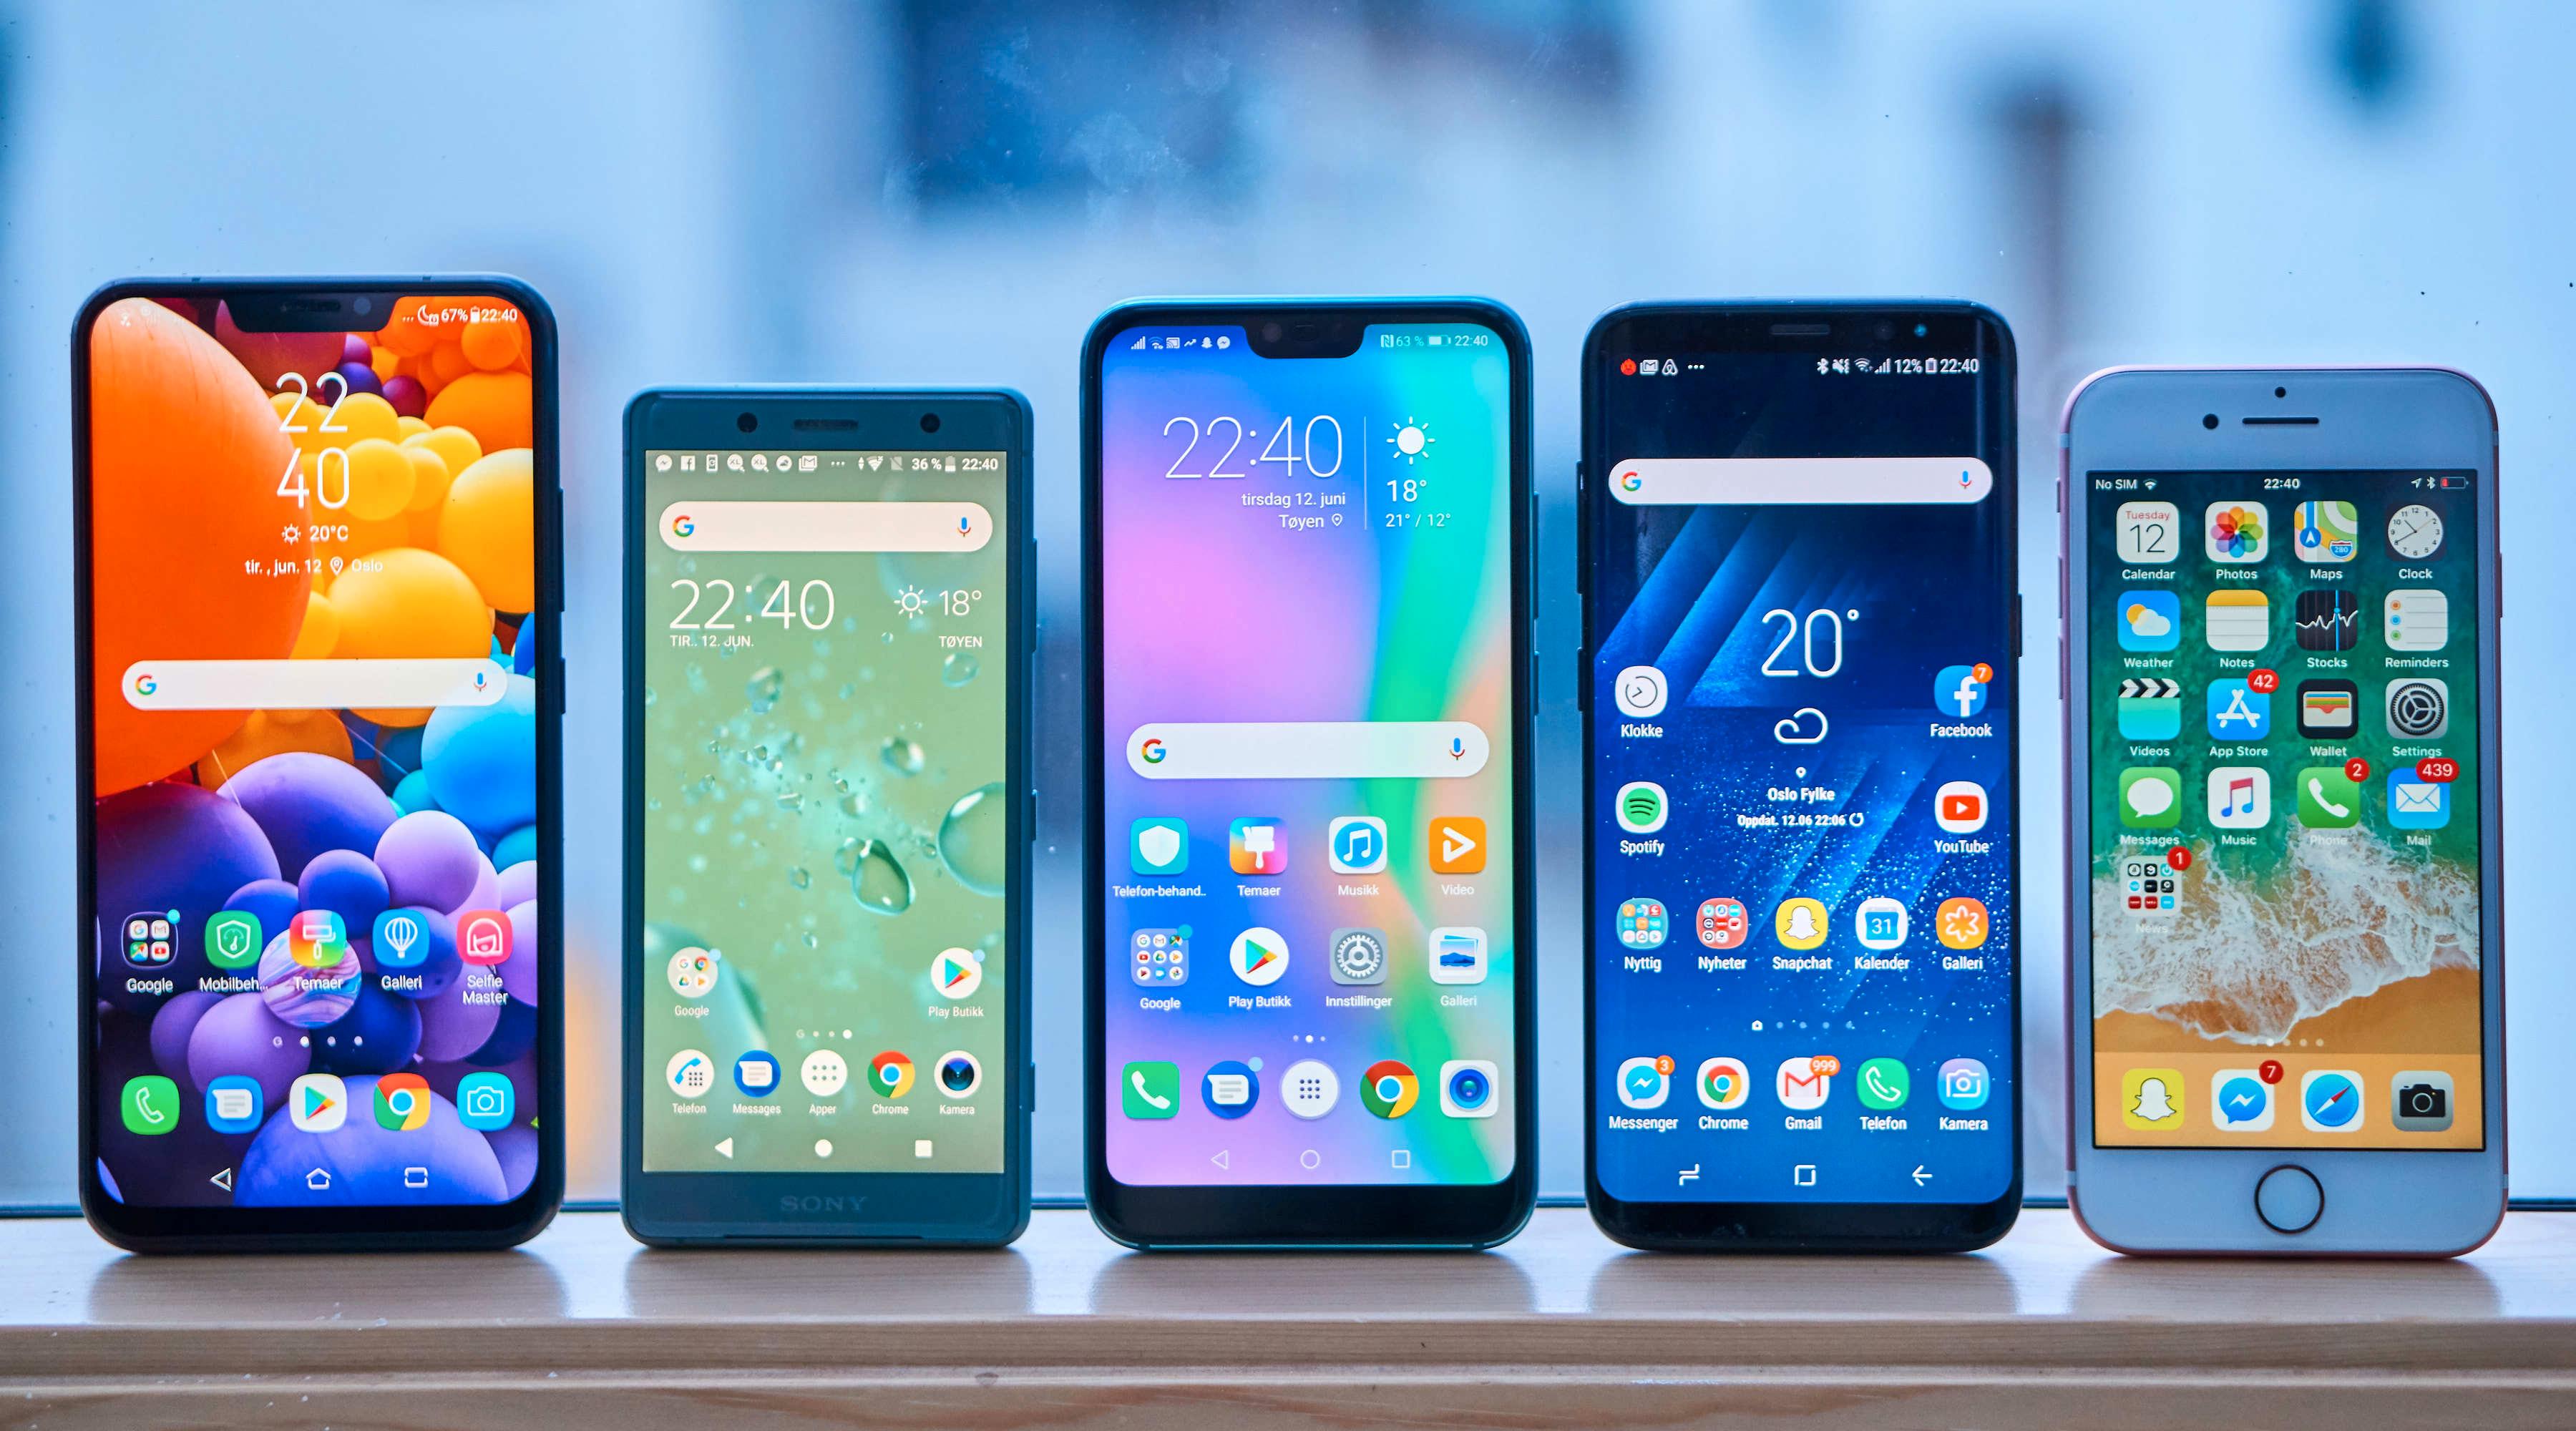 Honor 10 (midten) er en kompakt telefon. Fra venstre: Zenfone 5, Xperia XZ2 Compact, Honor 10, Galaxy S8 og iPhone 7.